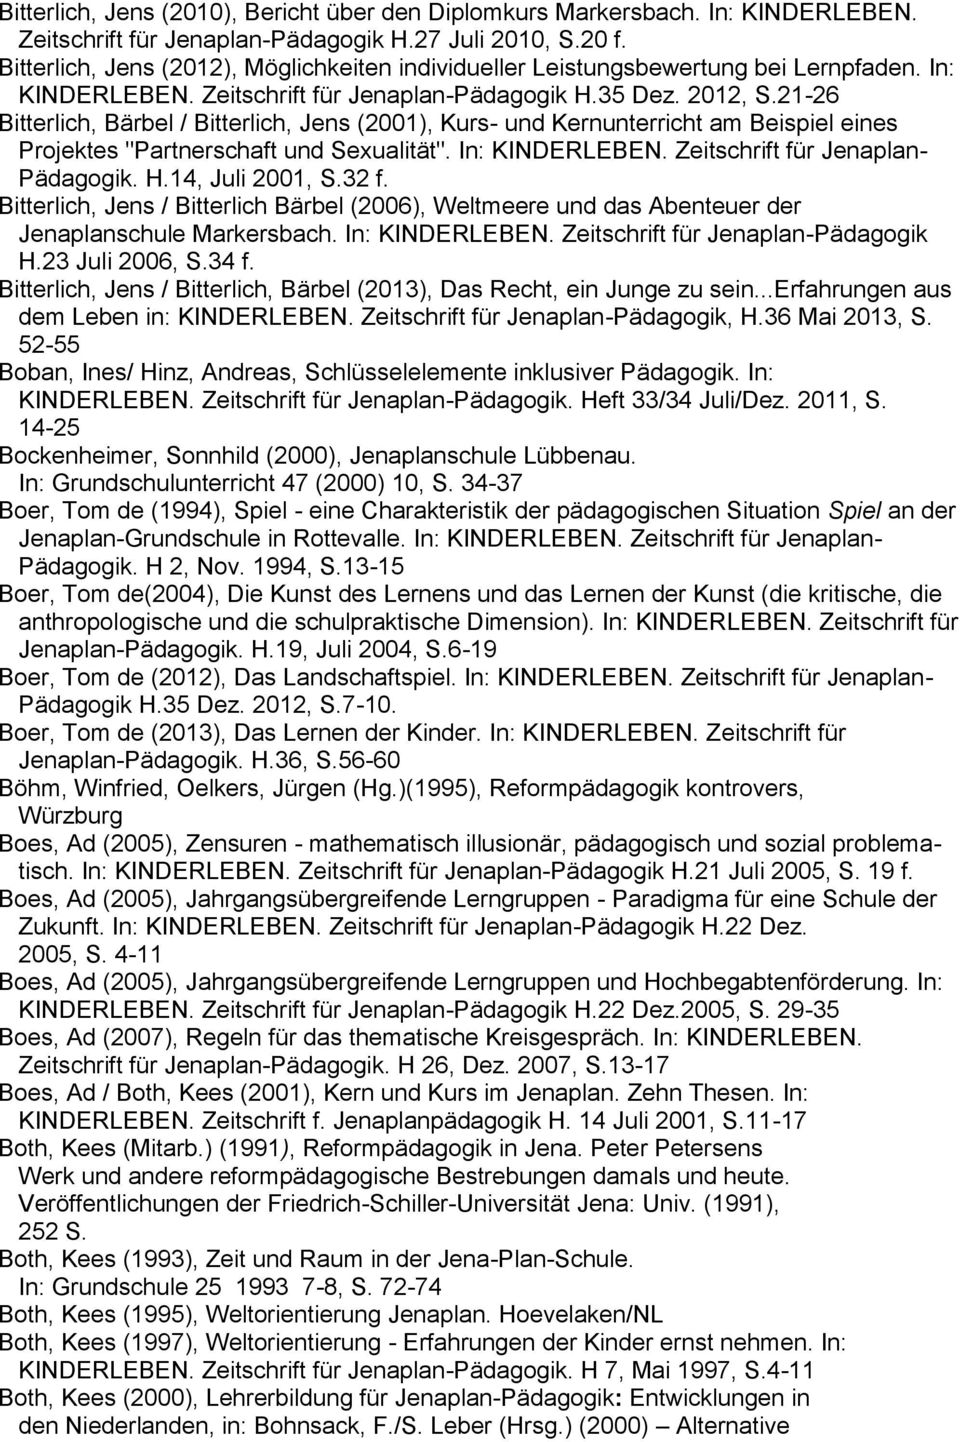 21-26 Bitterlich, Bärbel / Bitterlich, Jens (2001), Kurs- und Kernunterricht am Beispiel eines Projektes "Partnerschaft und Sexualität". In: KINDERLEBEN. Zeitschrift für Jenaplan- Pädagogik. H.